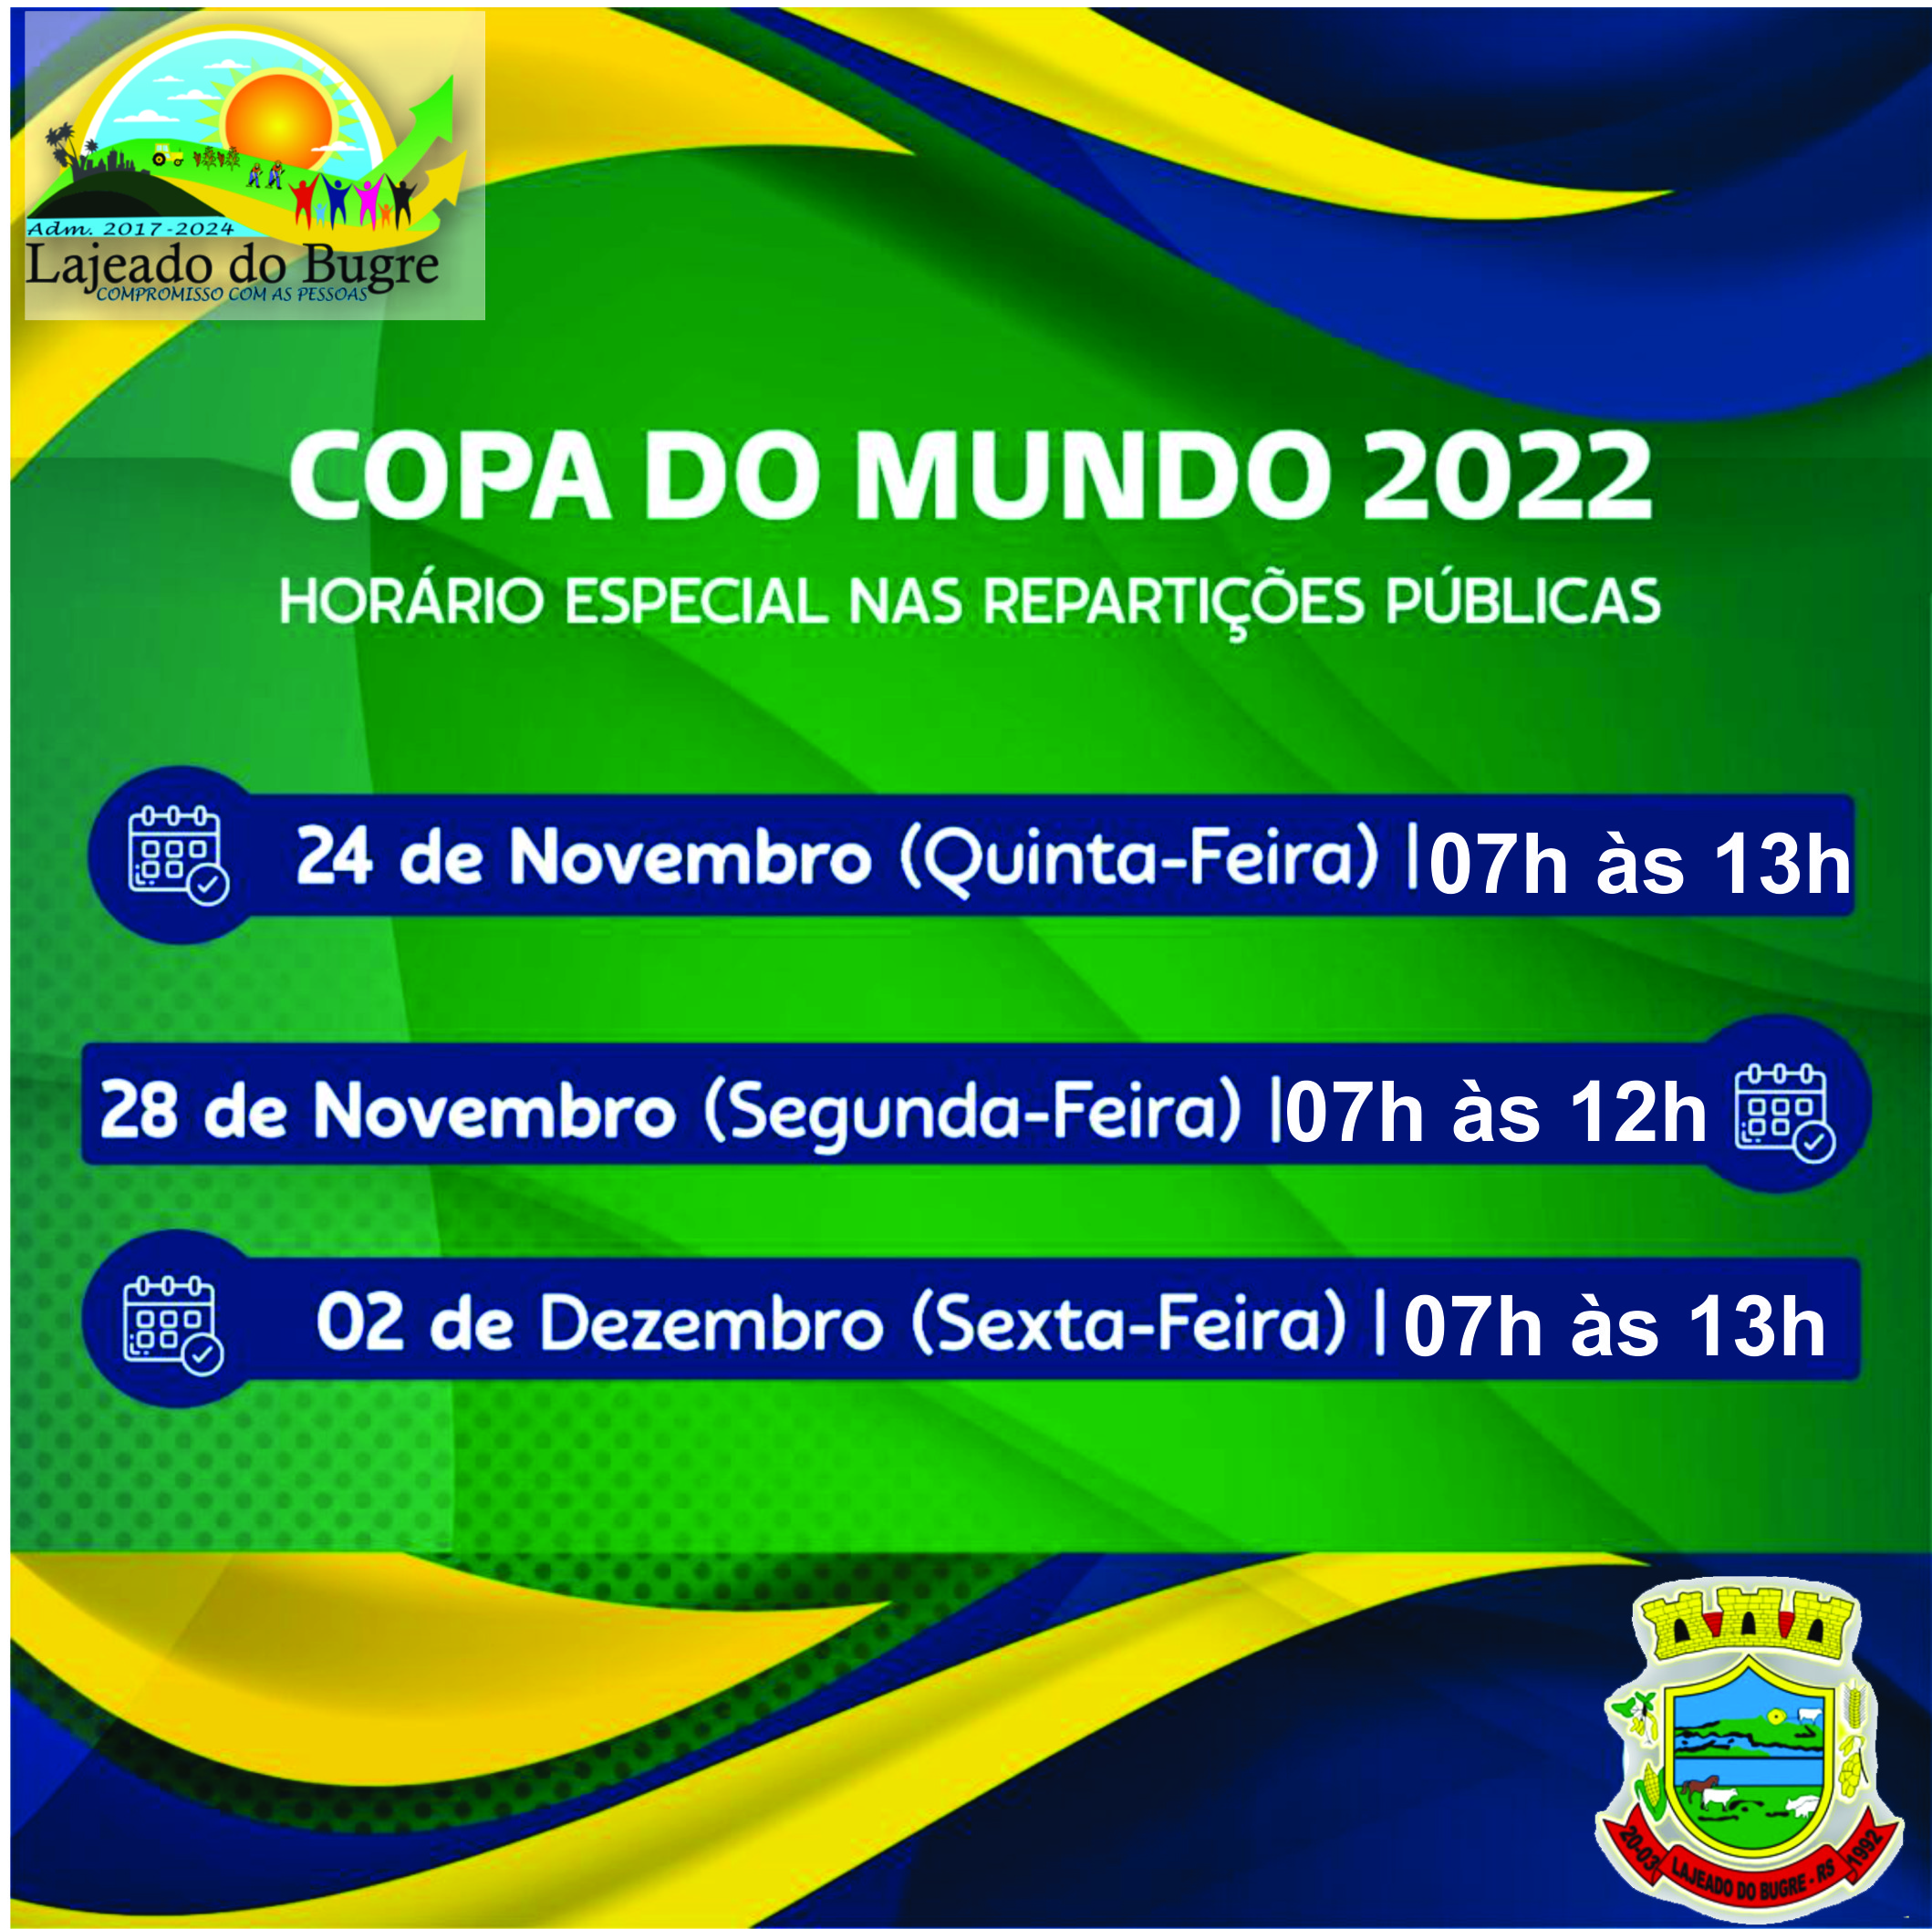 Governo do Tocantins decreta horários facultativos para os dias de jogos do  Brasil na Copa 2022 - Audifisco